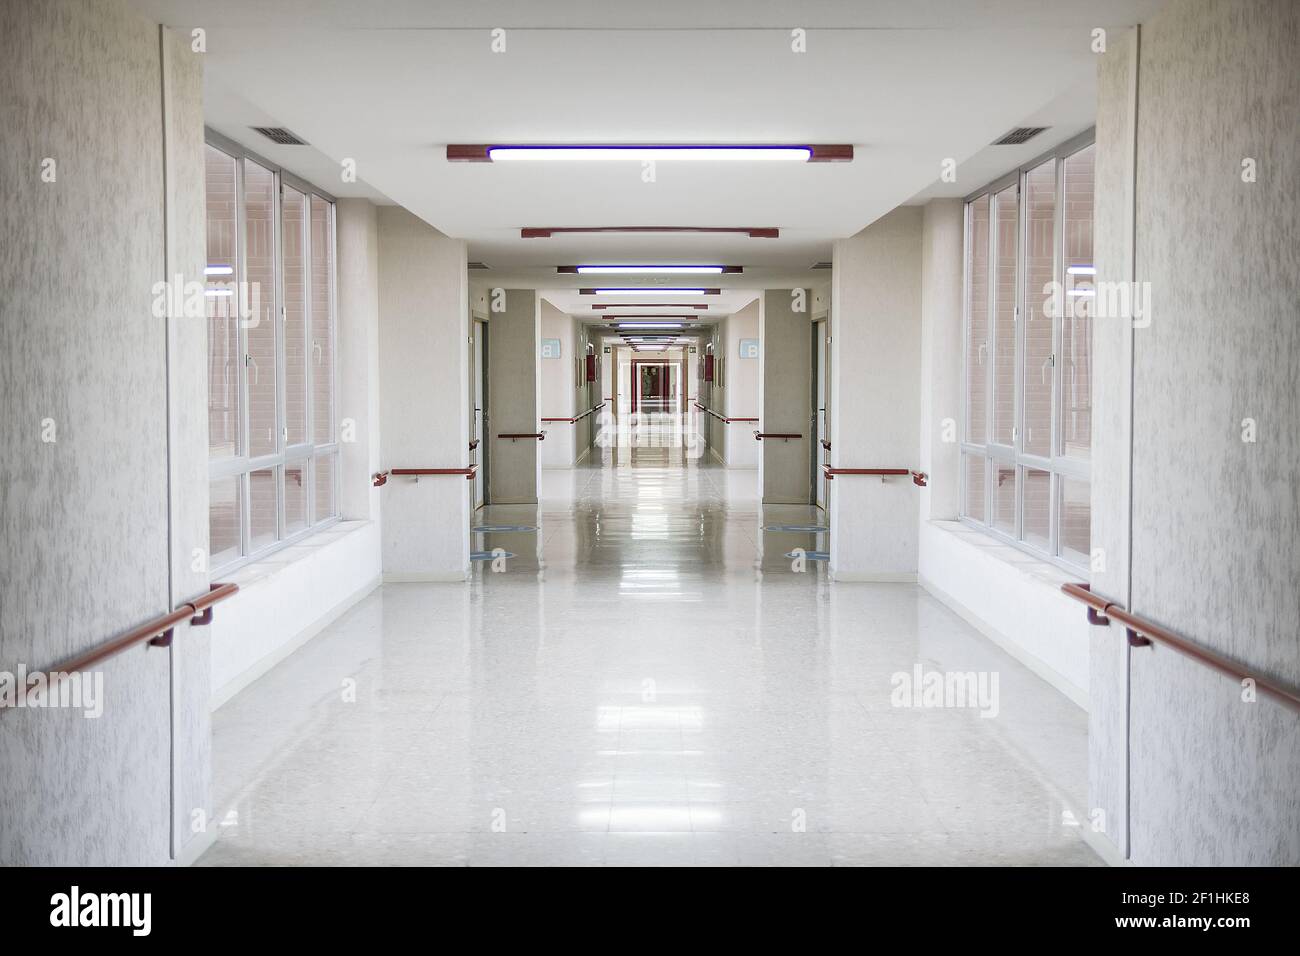 Corridoio bianco dell'ospedale, spazio pulito e igienico Foto Stock